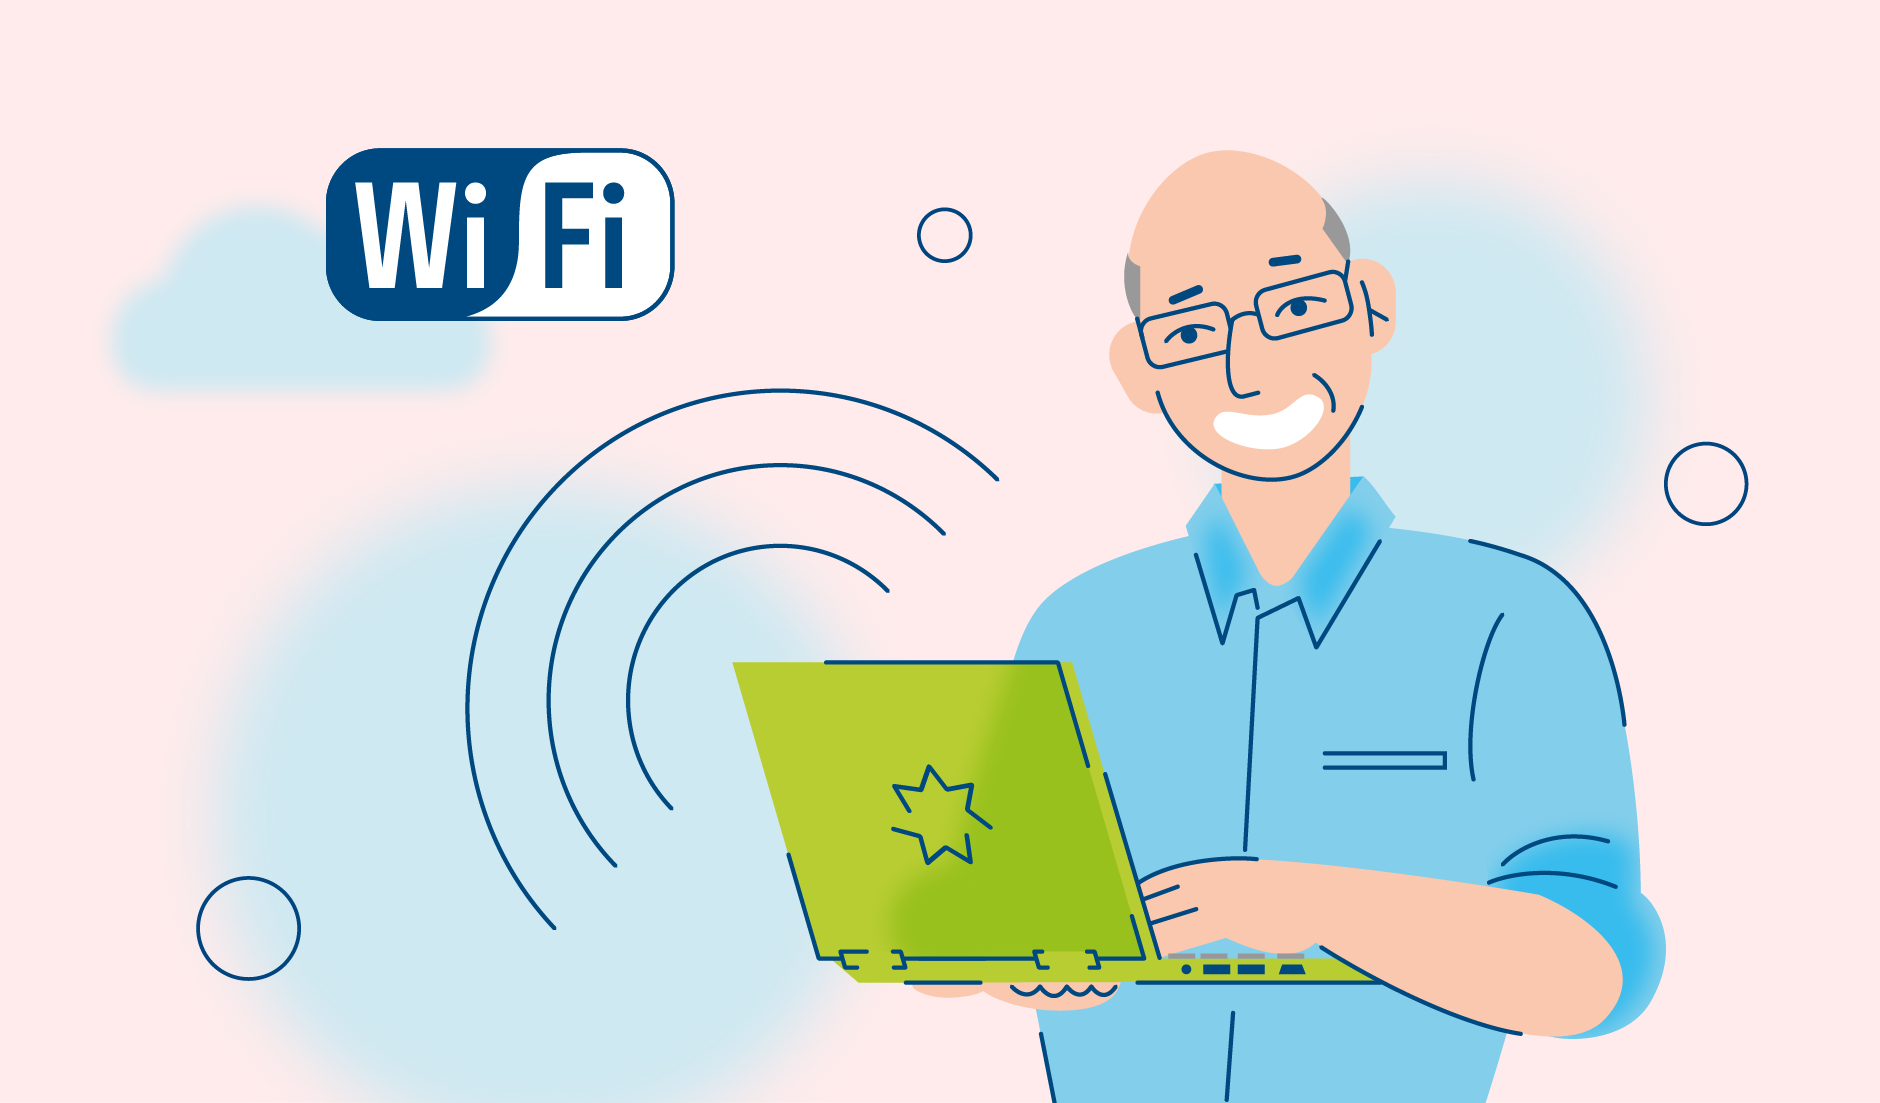 Wi-FI в телефоне не работает - причины и способы решения проблемы